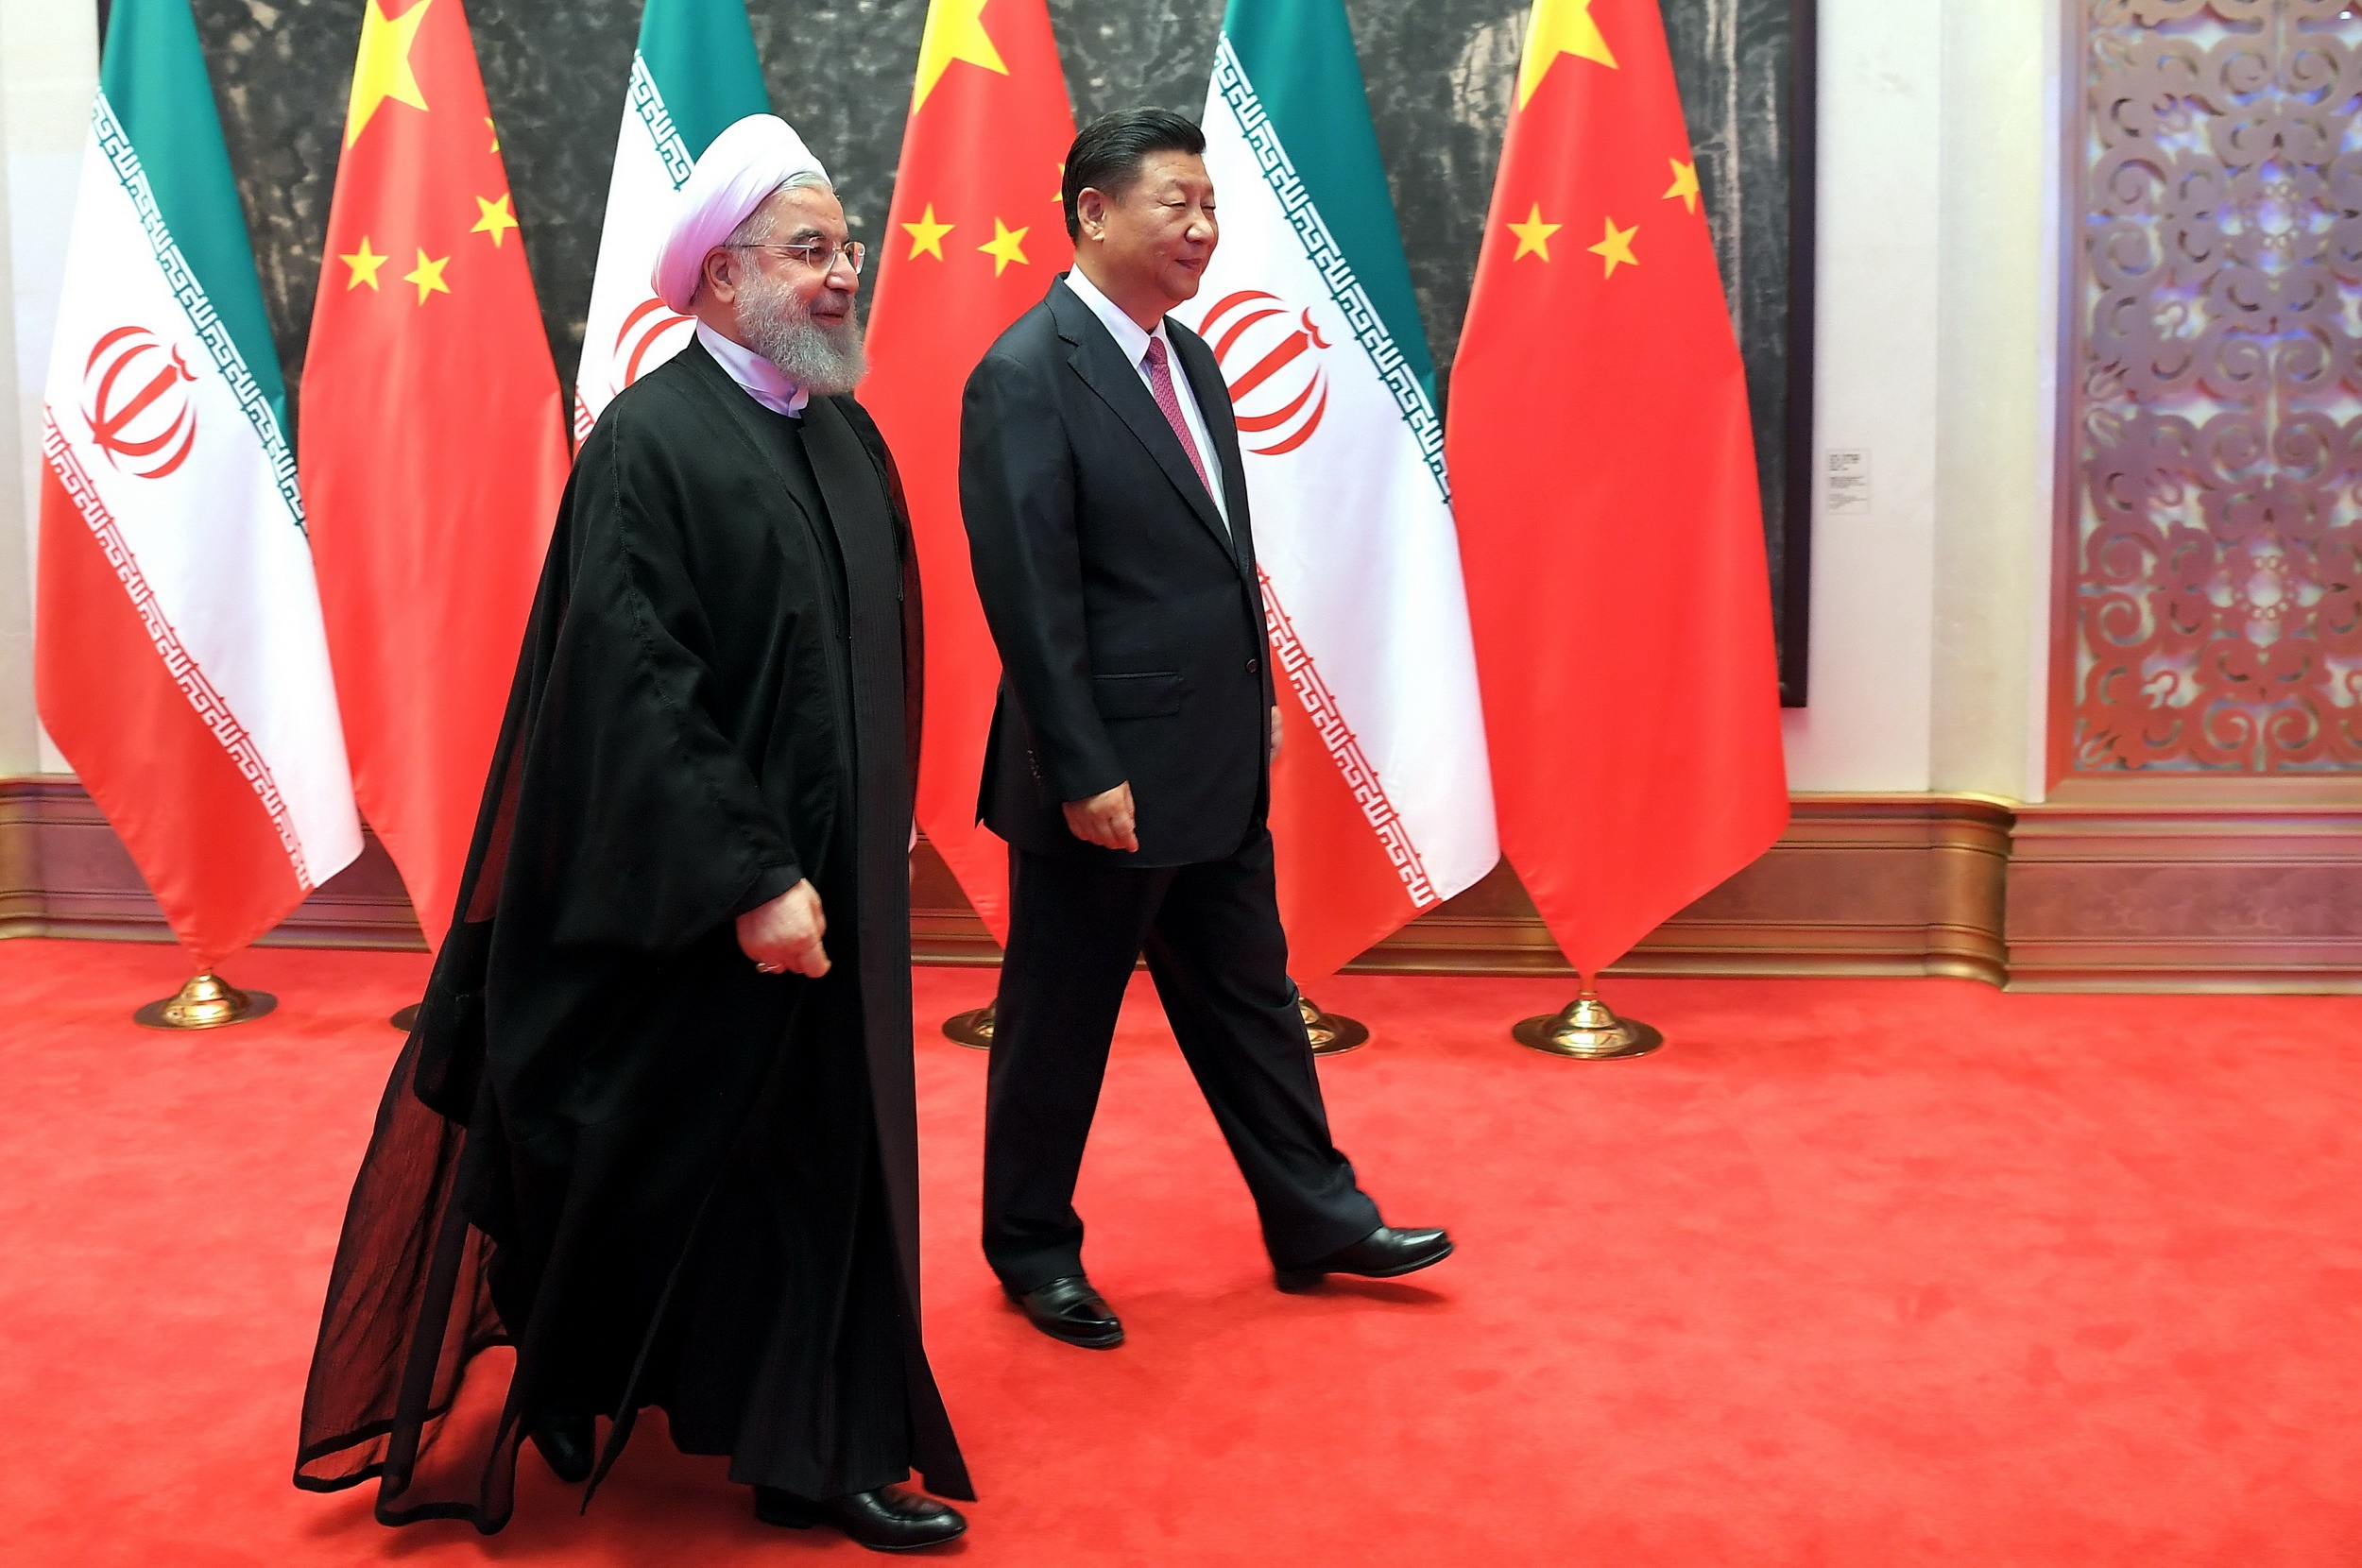 فرانسه، اسپانیا و ایتالیا قرارداد مشابه ایران با چین دارند